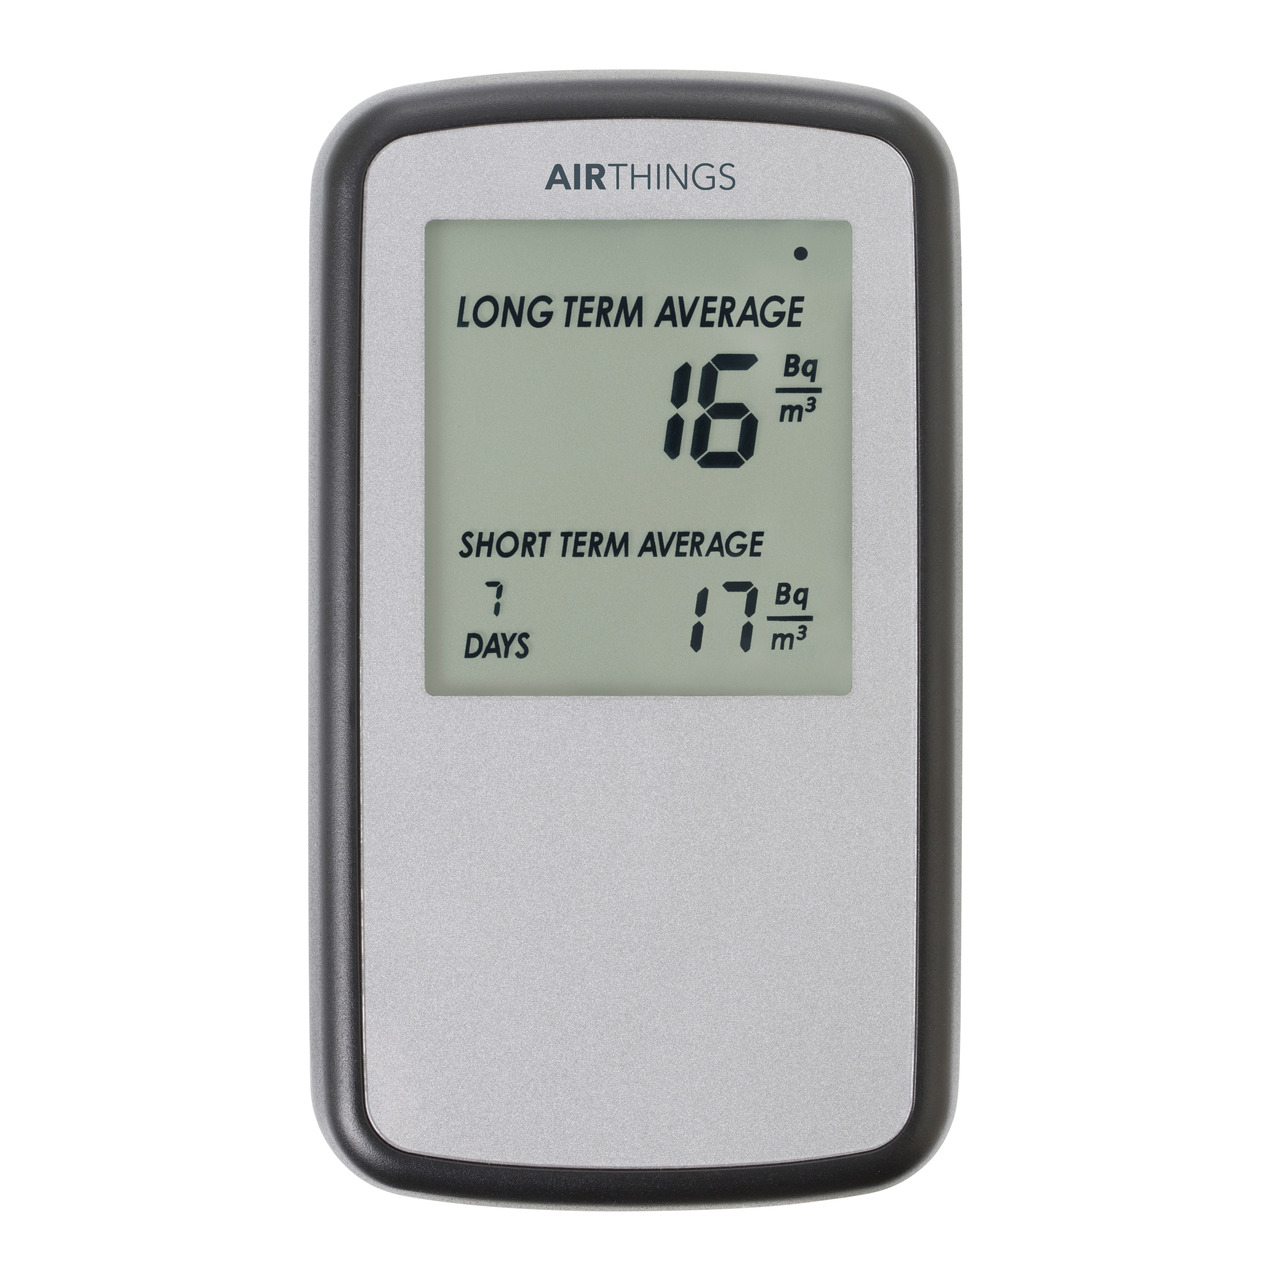 Airthings Radon-Messgerät - Radon-Monitor Corentium Home- Batteriebetrieb unter Klima - Wetter - Umwelt